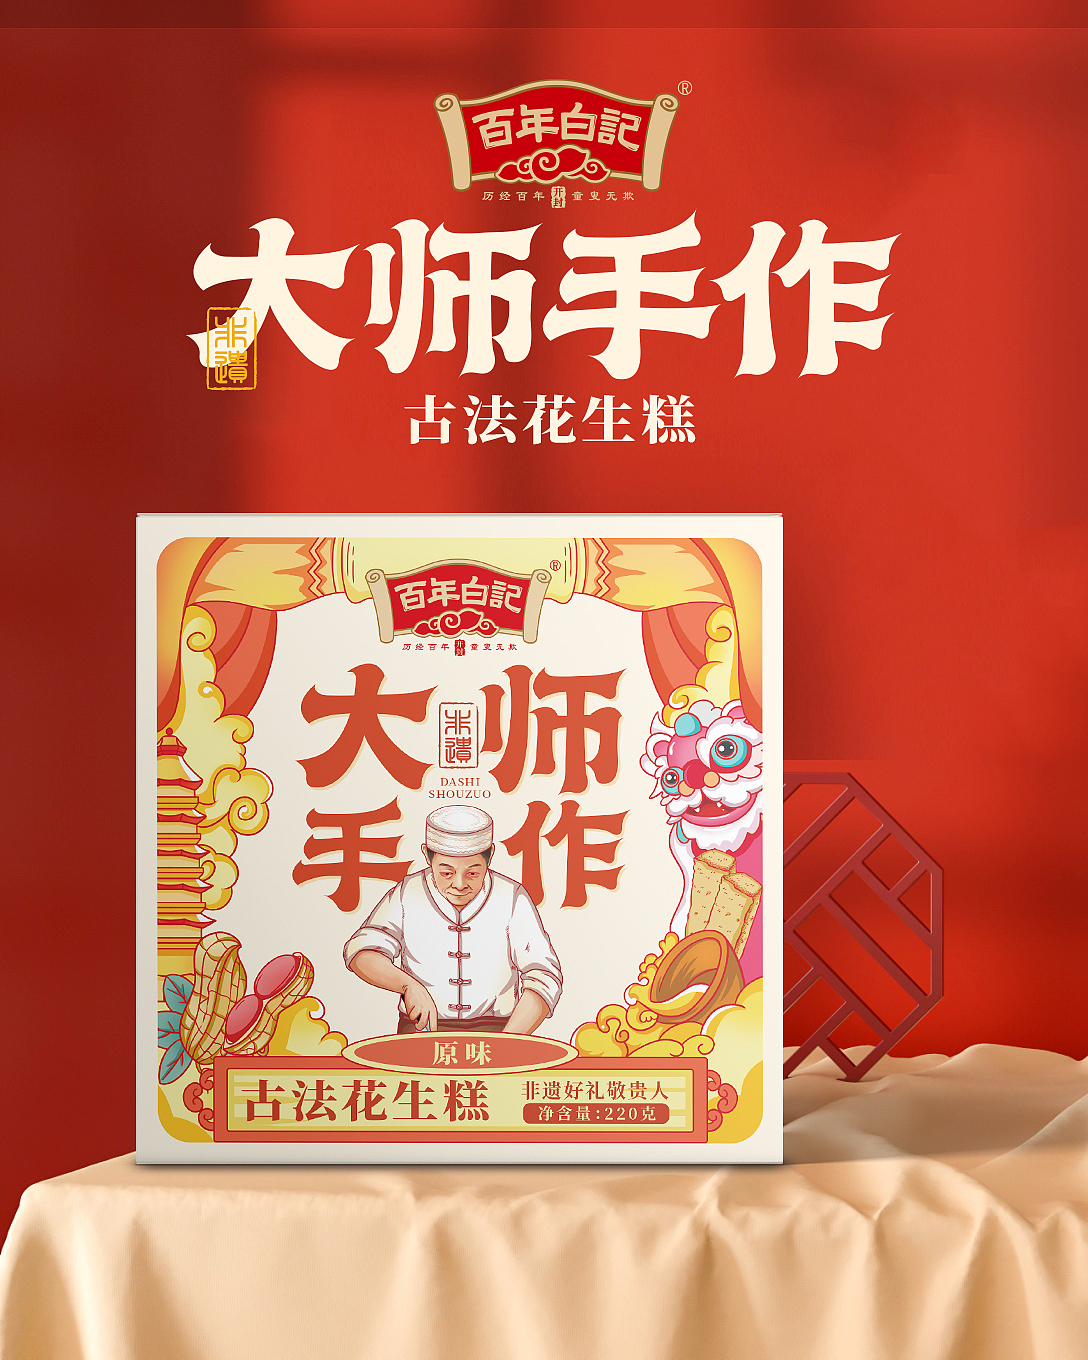 【台湾で必ず食べたい】豬血糕の読み方や作り方について紹介します-にいはお。